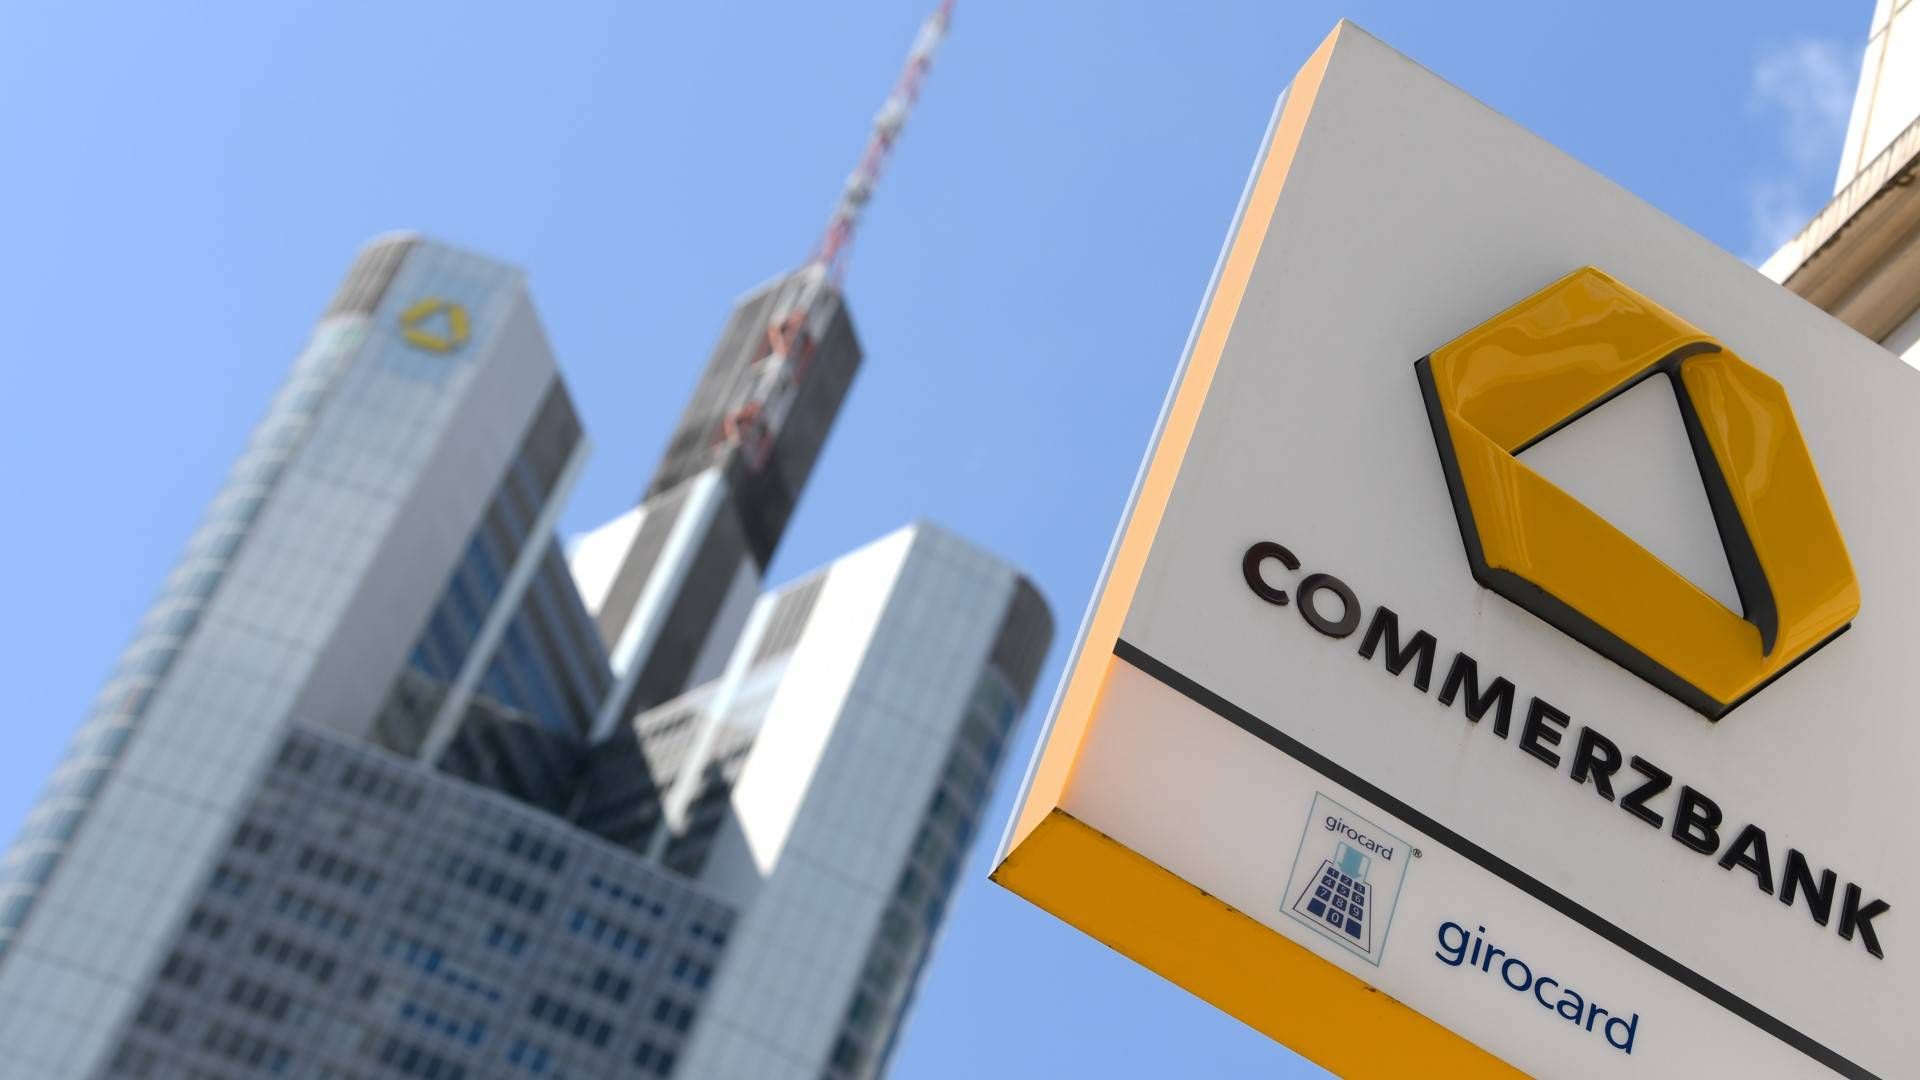 Die Commerzbank-Zentrale in Frankfurt. | Foto: picture alliance/dpa